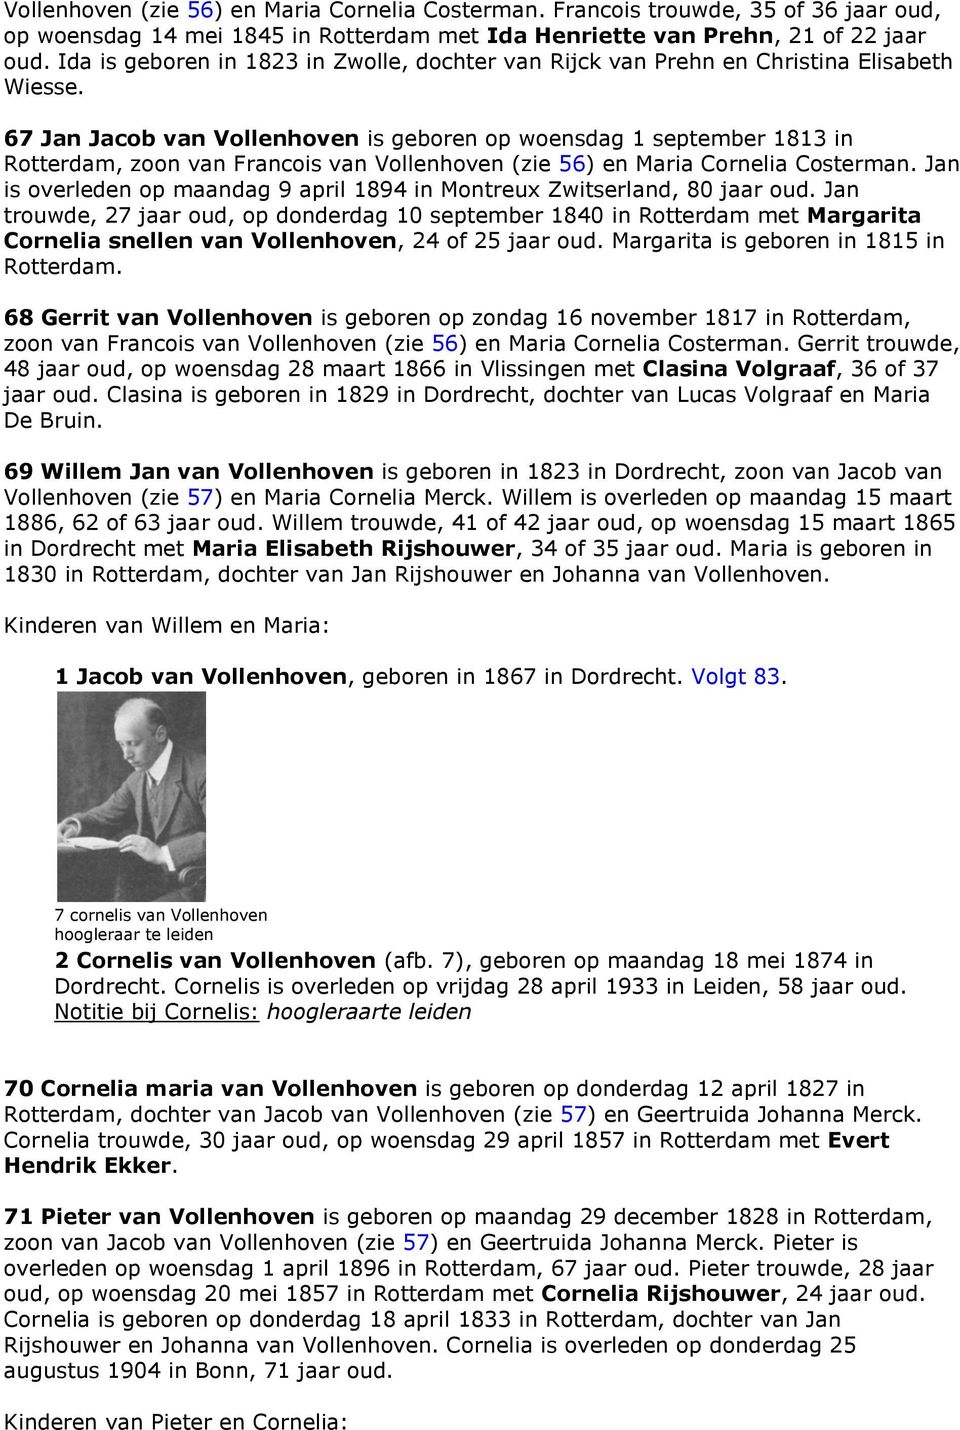 67 Jan Jacob van Vollenhoven is geboren op woensdag 1 september 1813 in Rotterdam, zoon van Francois van Vollenhoven (zie 56) en Maria Cornelia Costerman.